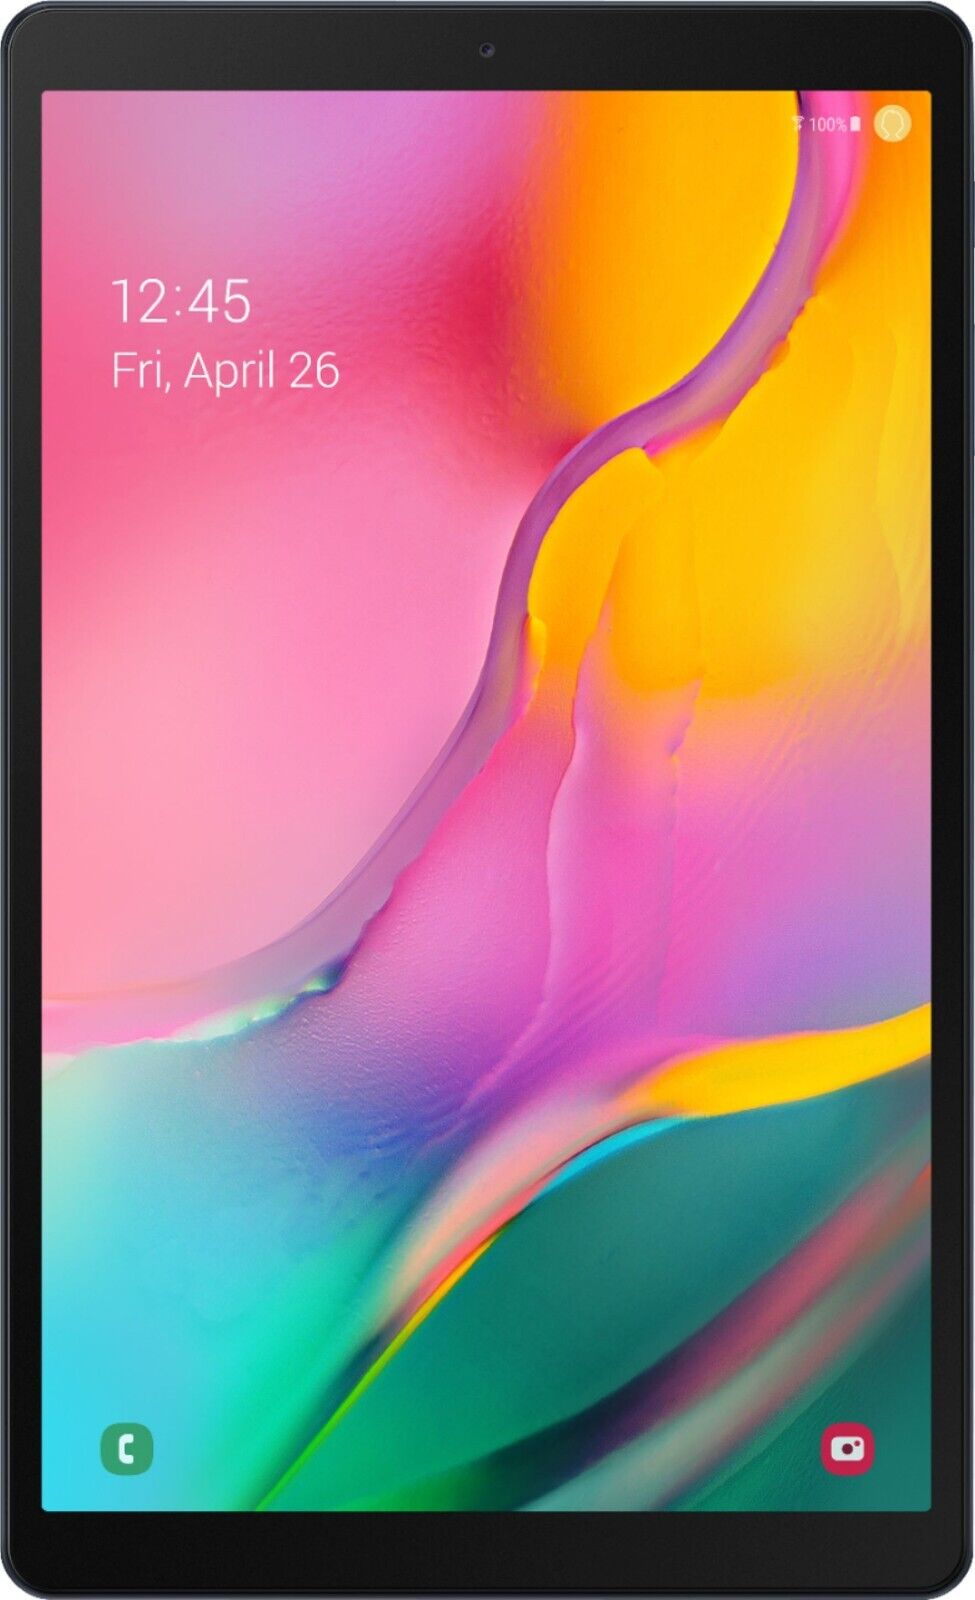 Galaxy Tab A 10.1 (2019) 32GB - Silver - (Wi-Fi)